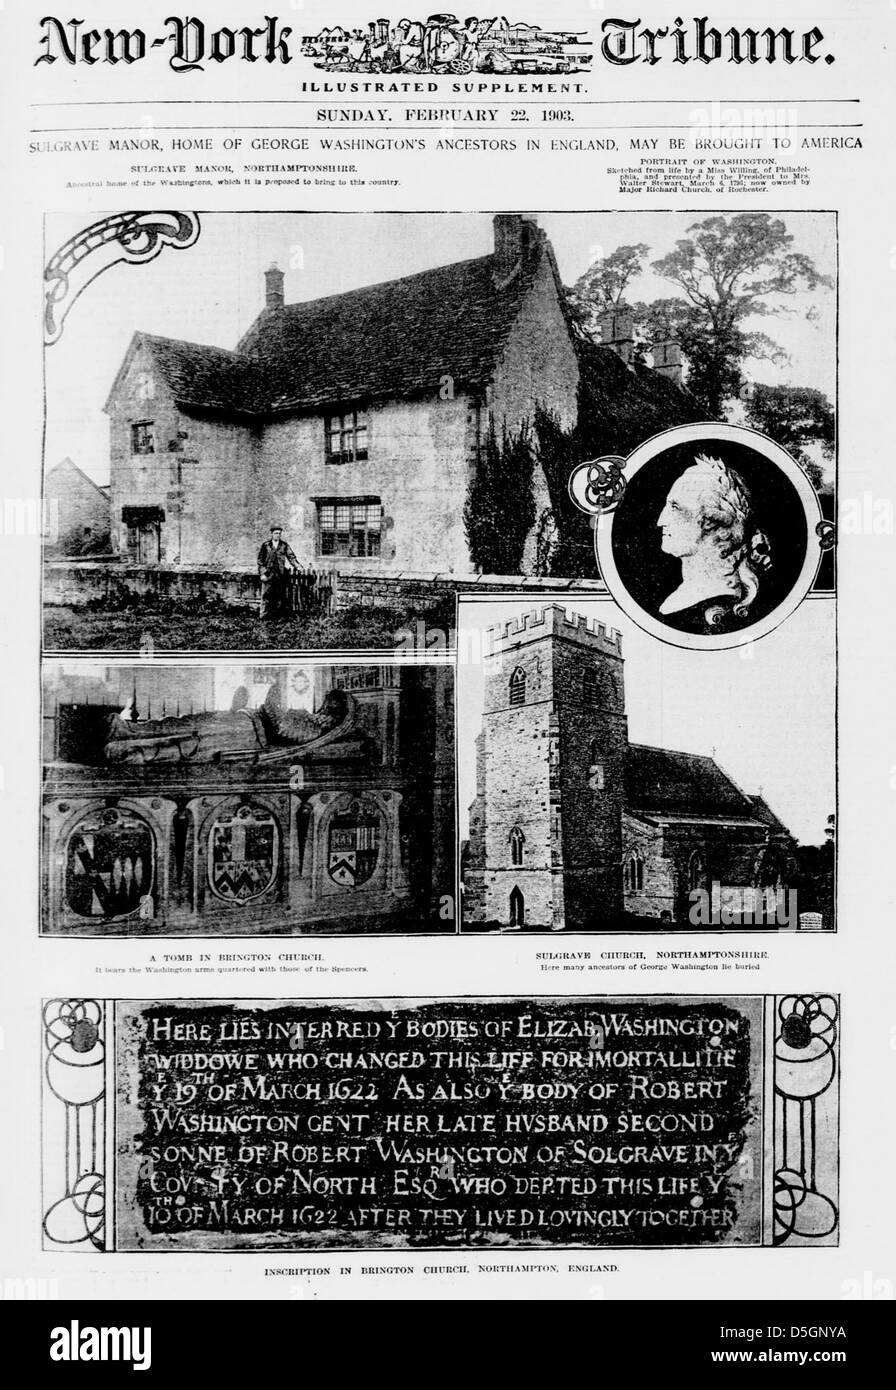 Sulgrave Manor, la casa di George Washington antenati in Inghilterra, può essere portato in America (LOC) Foto Stock